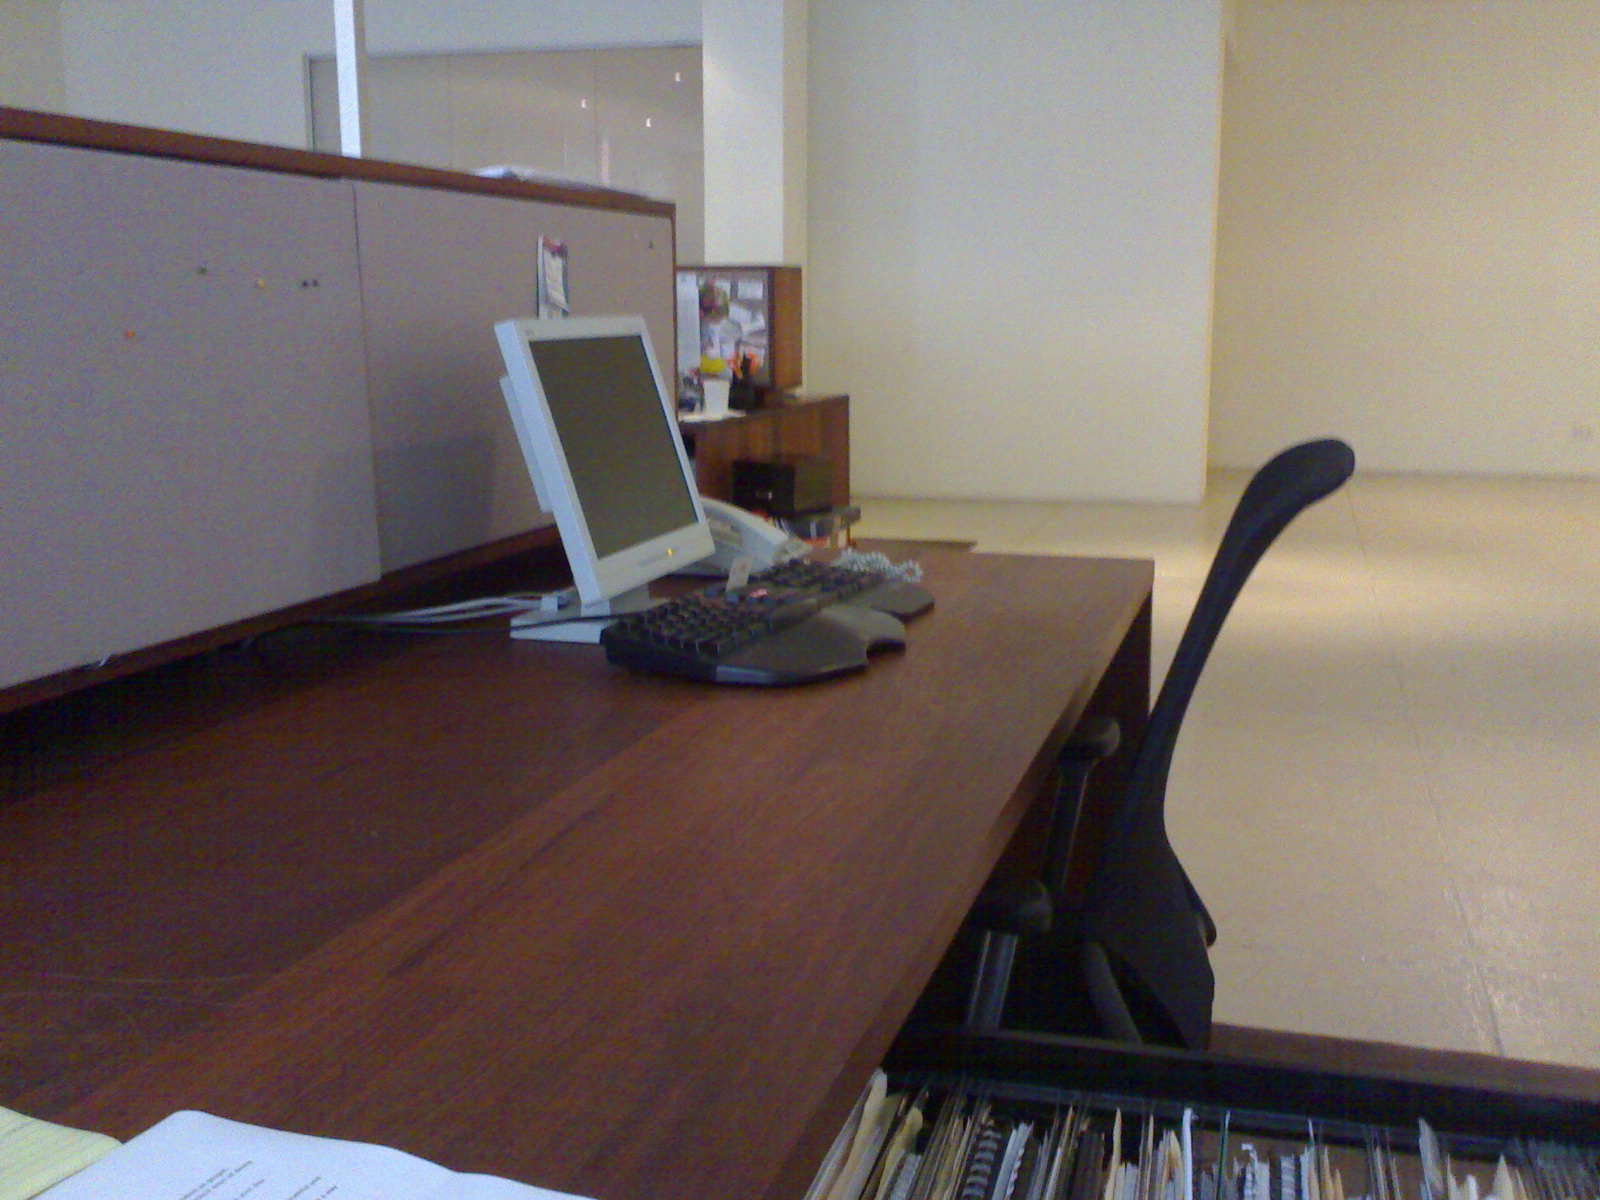 james-empty-desk.jpg